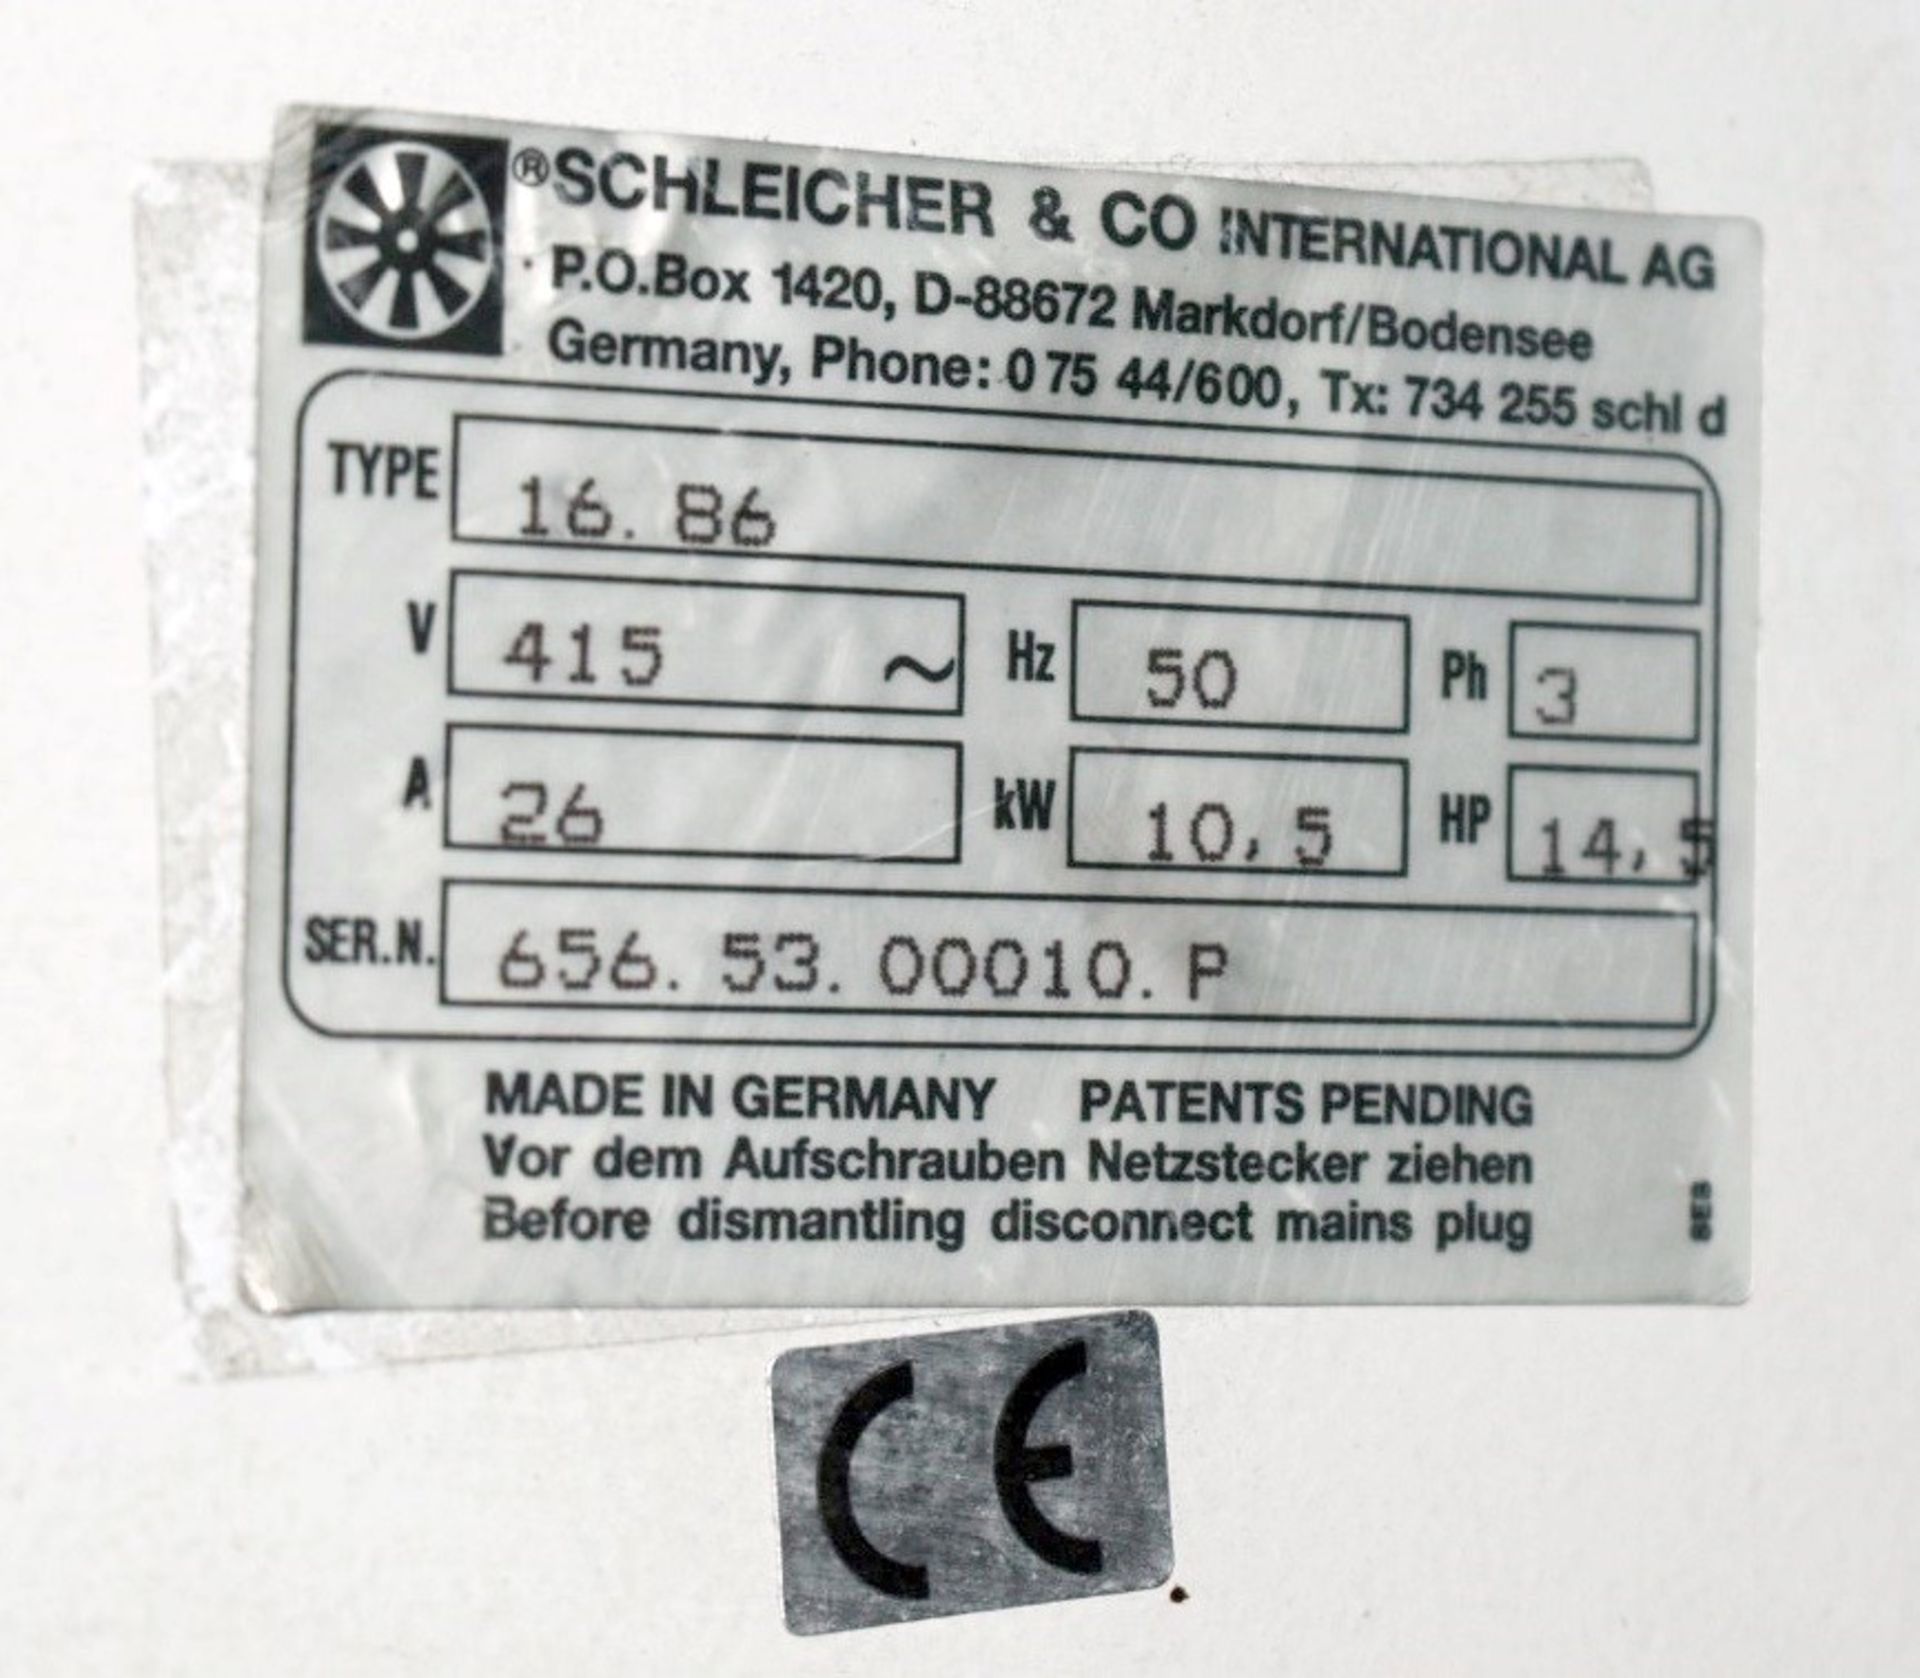 1 x Schleicher Confidential Document Shredder - Industrial Shredding Machine  - Type S860 CSL - 3 - Image 10 of 10